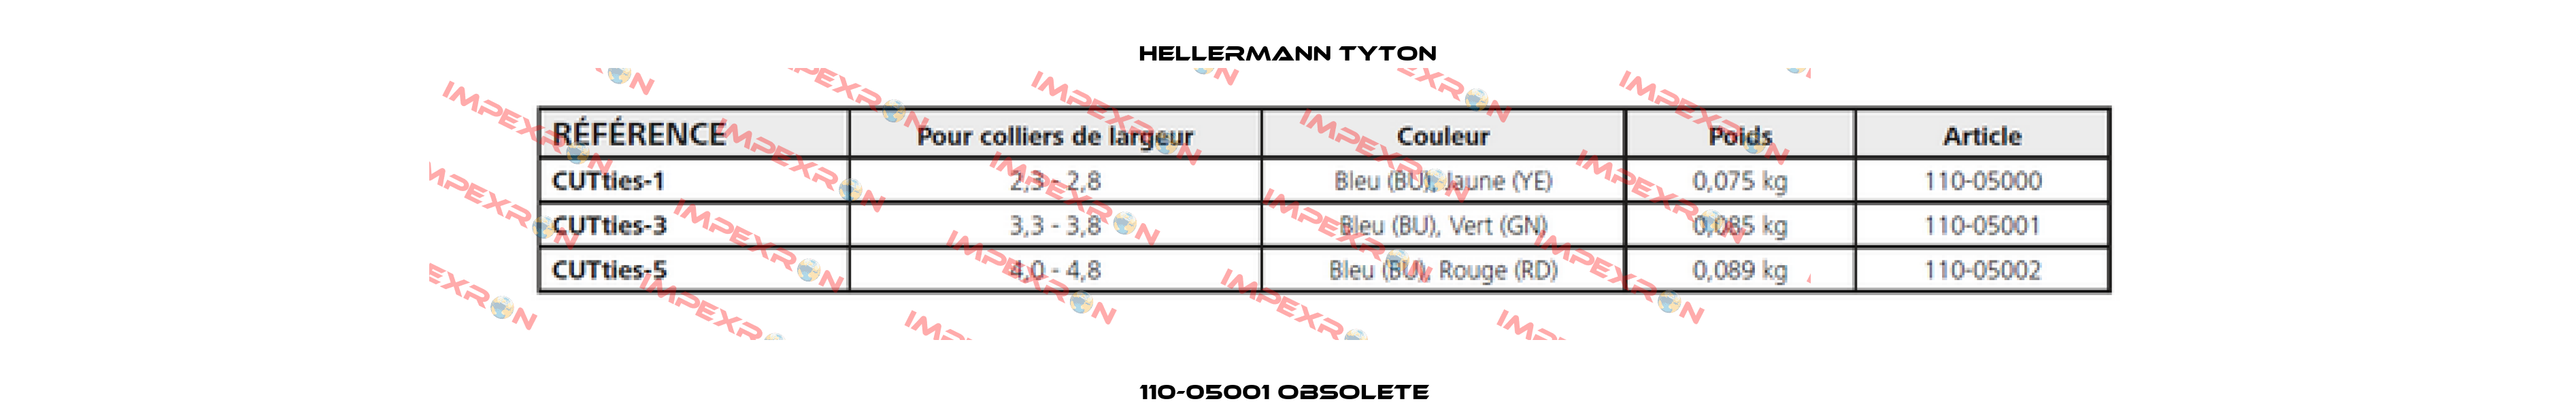 110-05001 obsolete  Hellermann Tyton